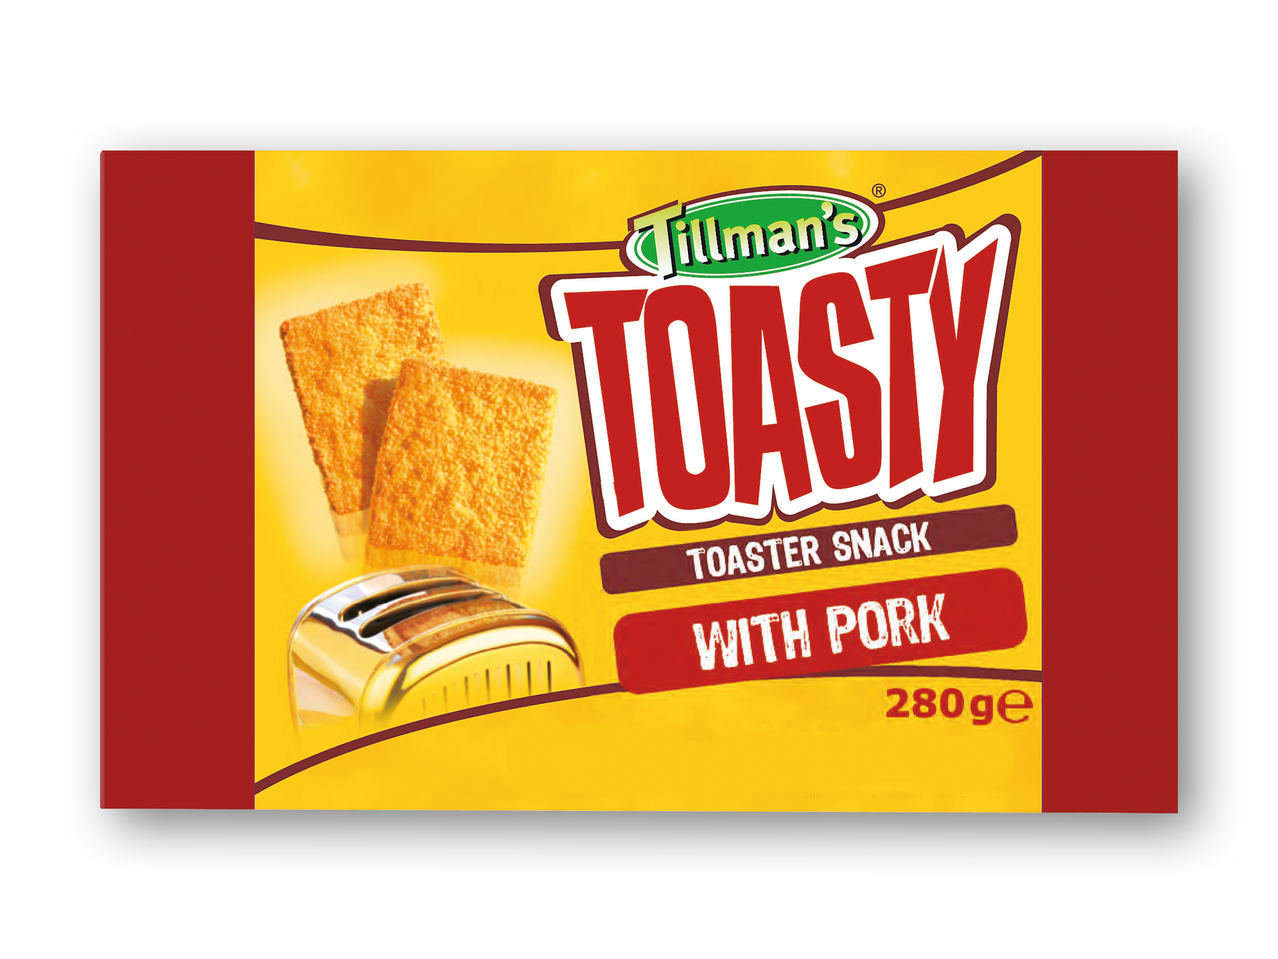 TILLMAN'S Toasty snack